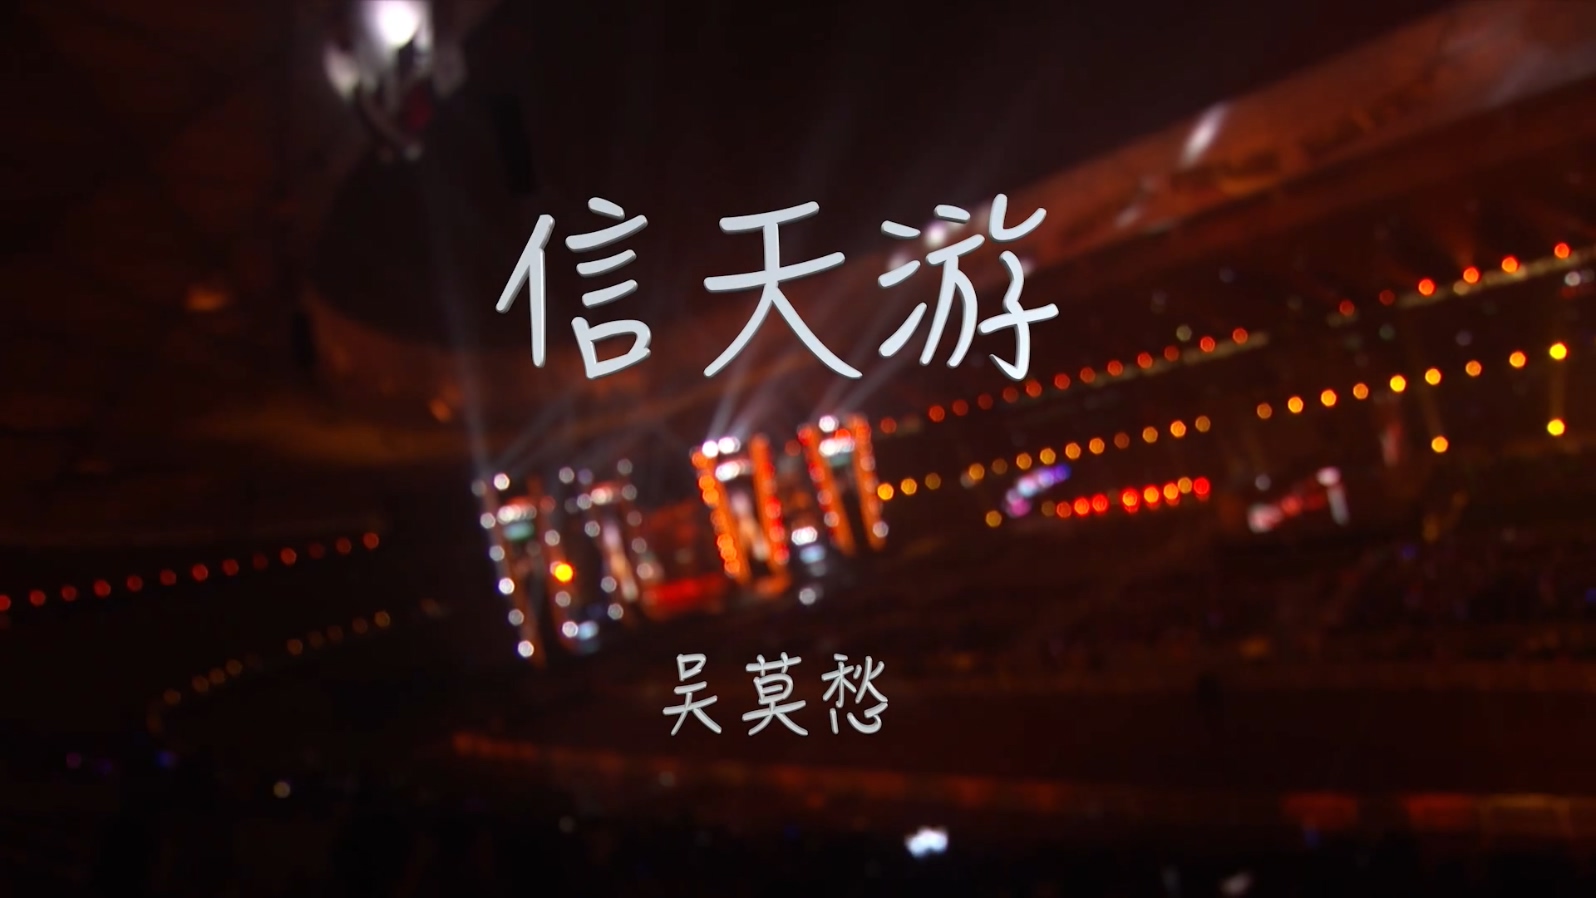 吴莫愁 - 信天游 现场版 - 1080P